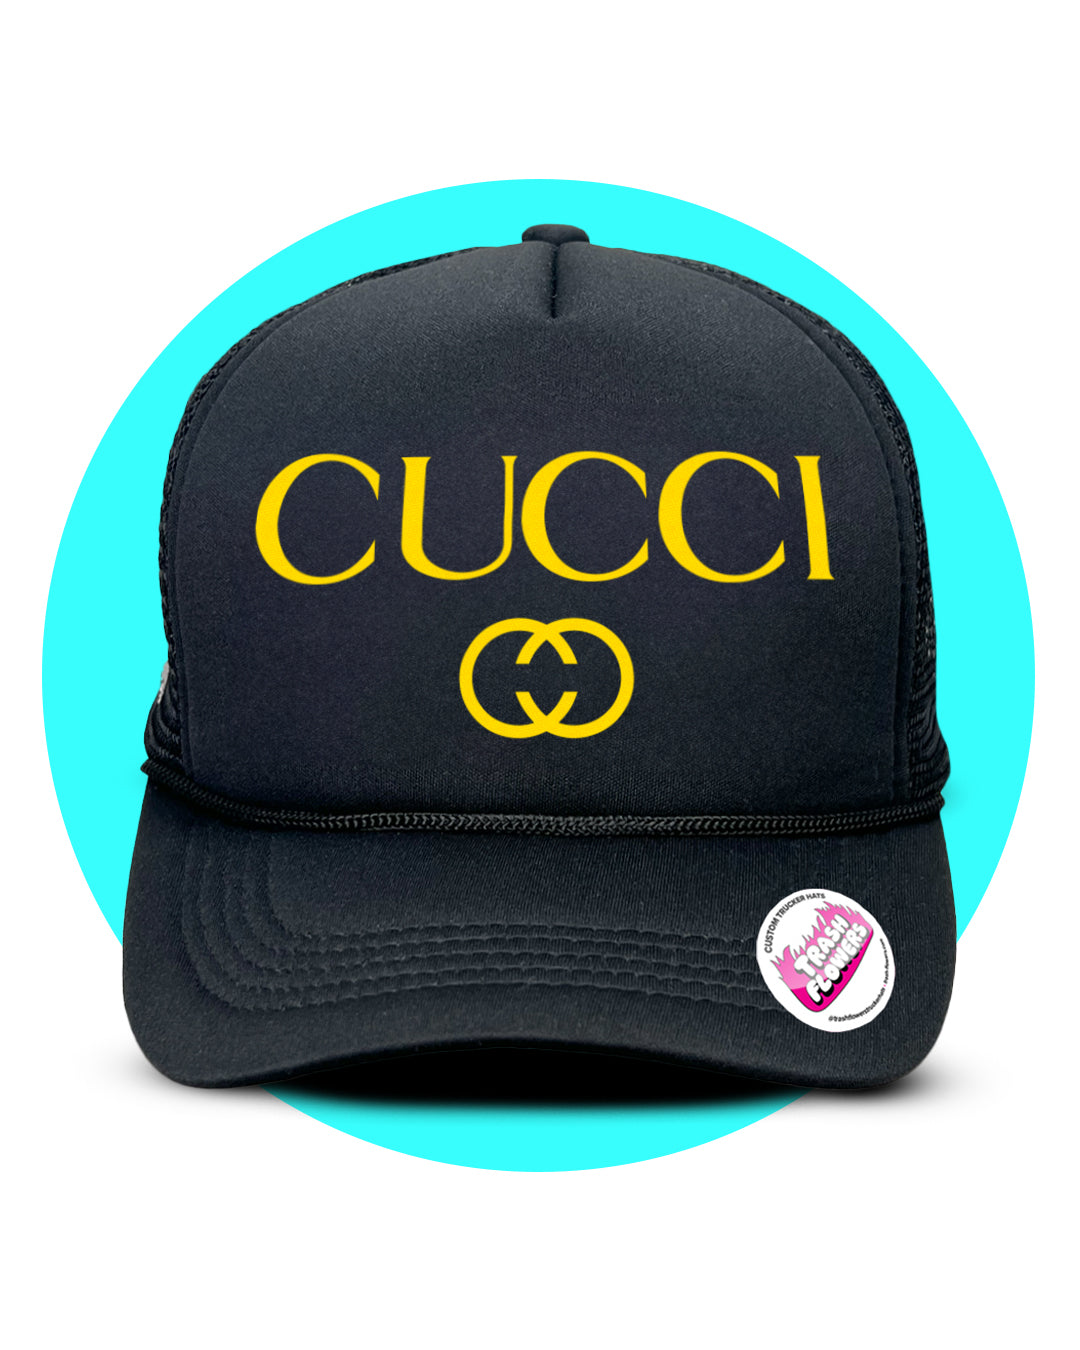 It's All Cucci Trucker Hat